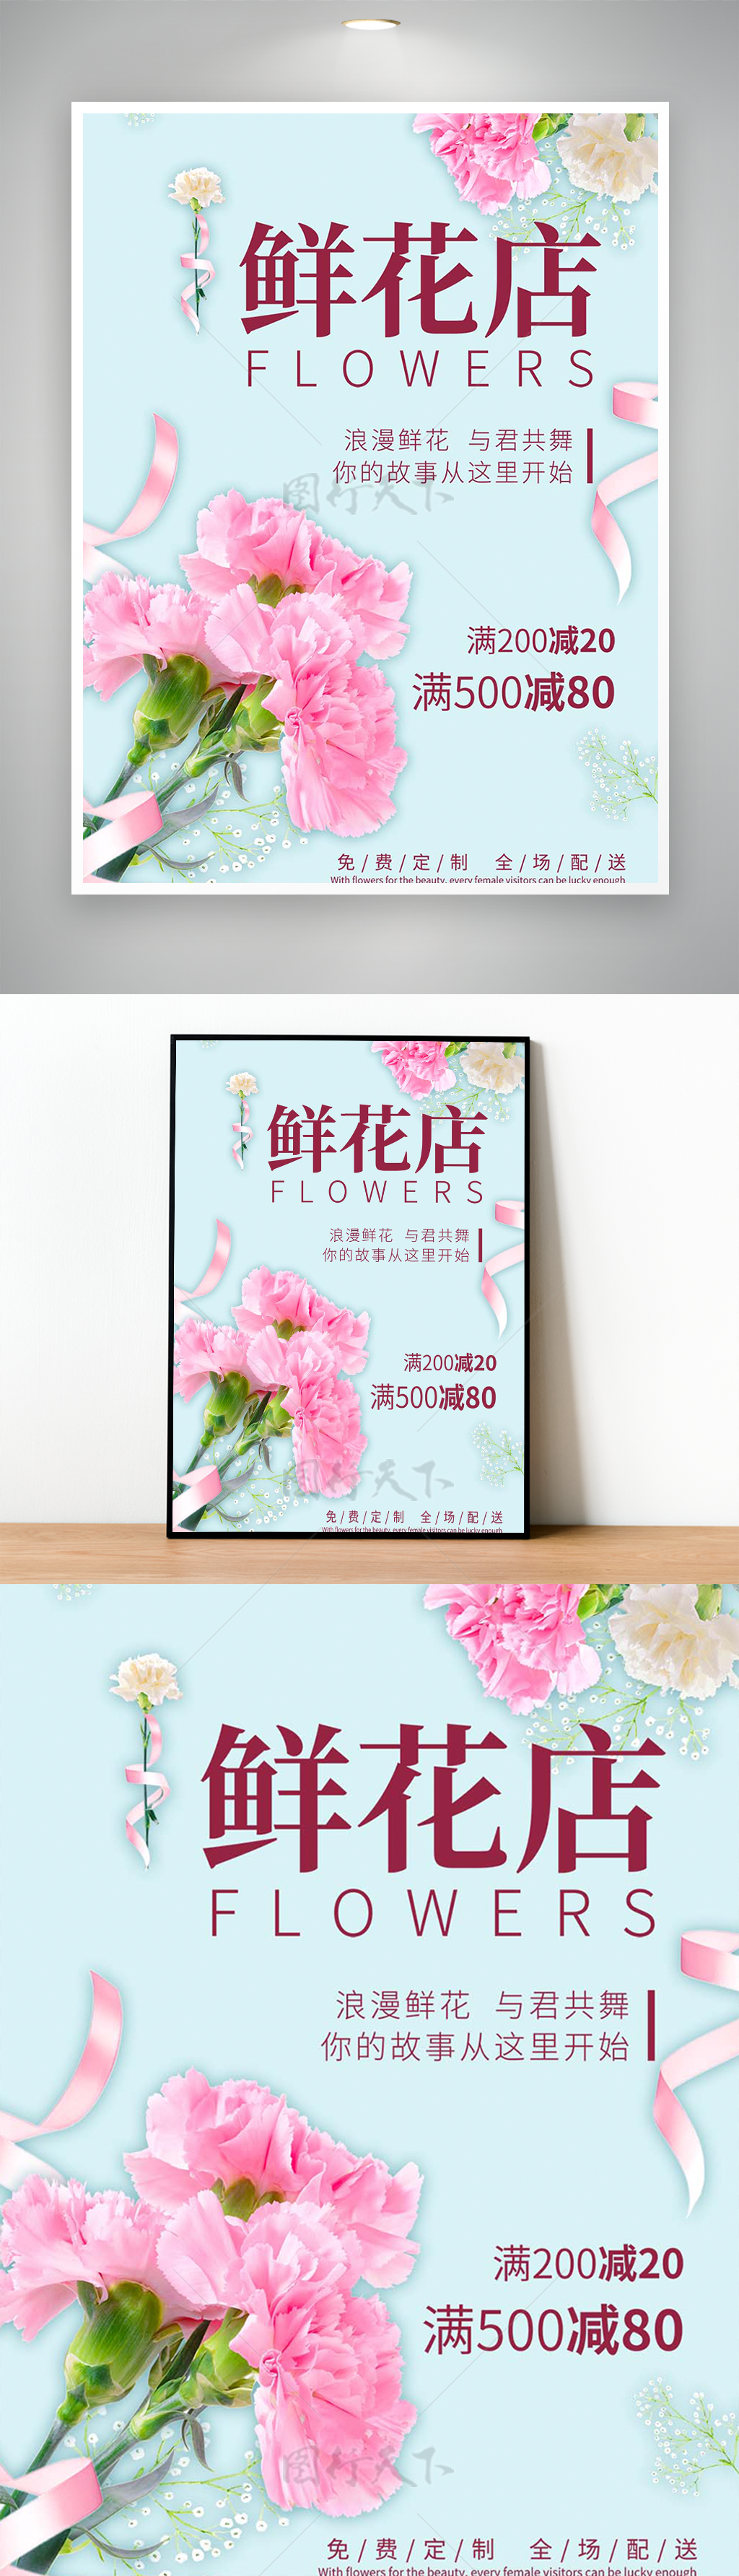 浪漫情人节快乐鲜花店促销海报